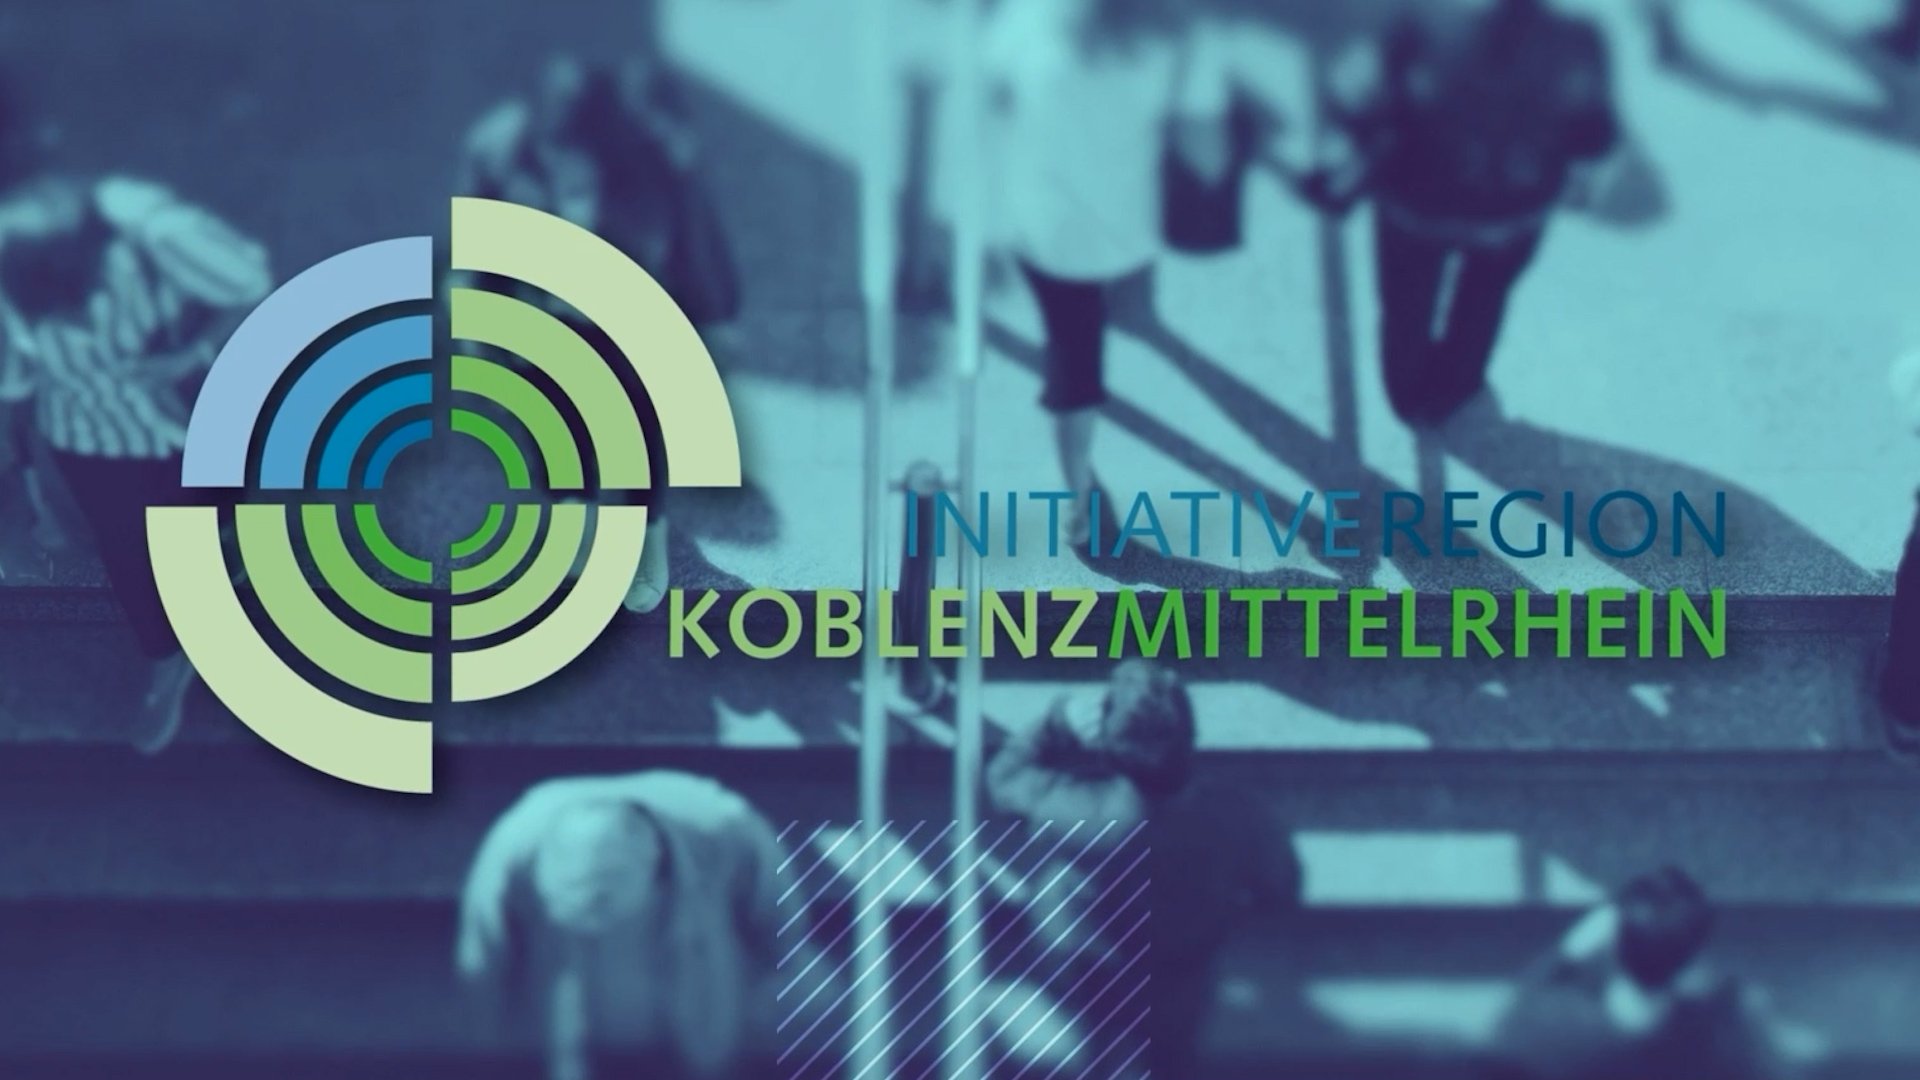 Initiative Region Koblenz-Mittelrhein präsentiert die Region in Sonderbeilage in FAZ und SZ 